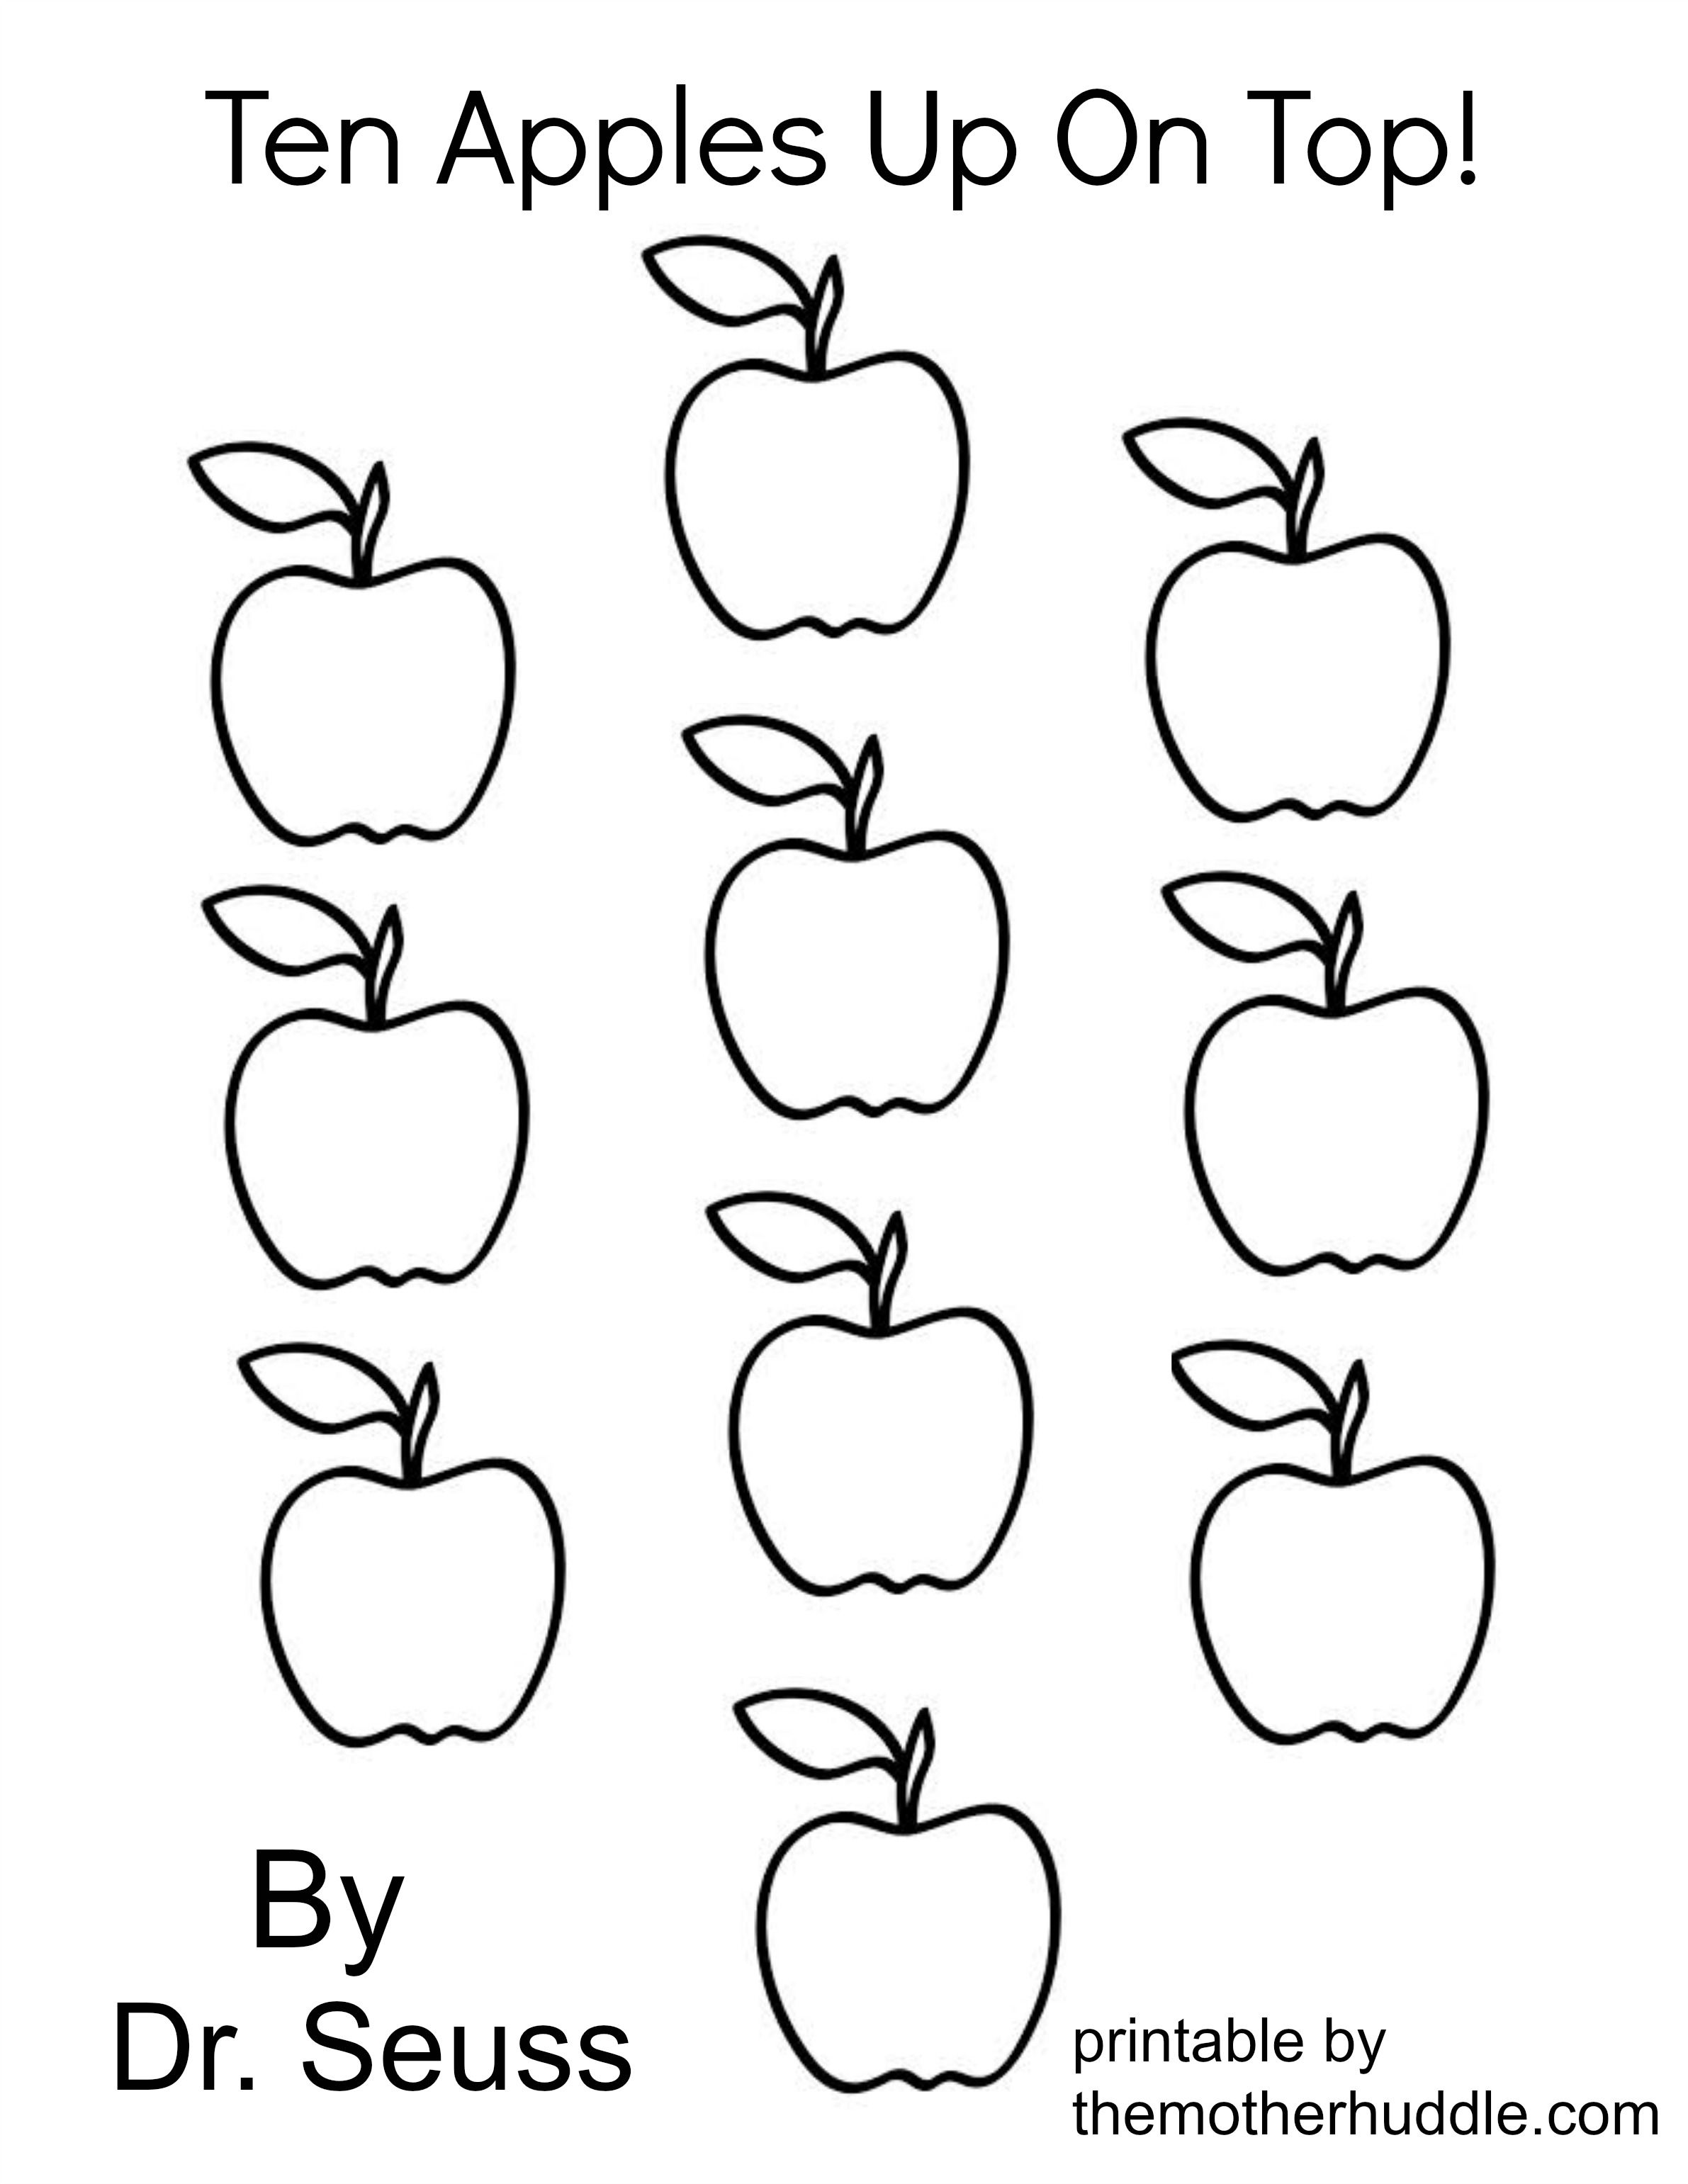 ten-apples-up-on-top-activities-clip-art-library